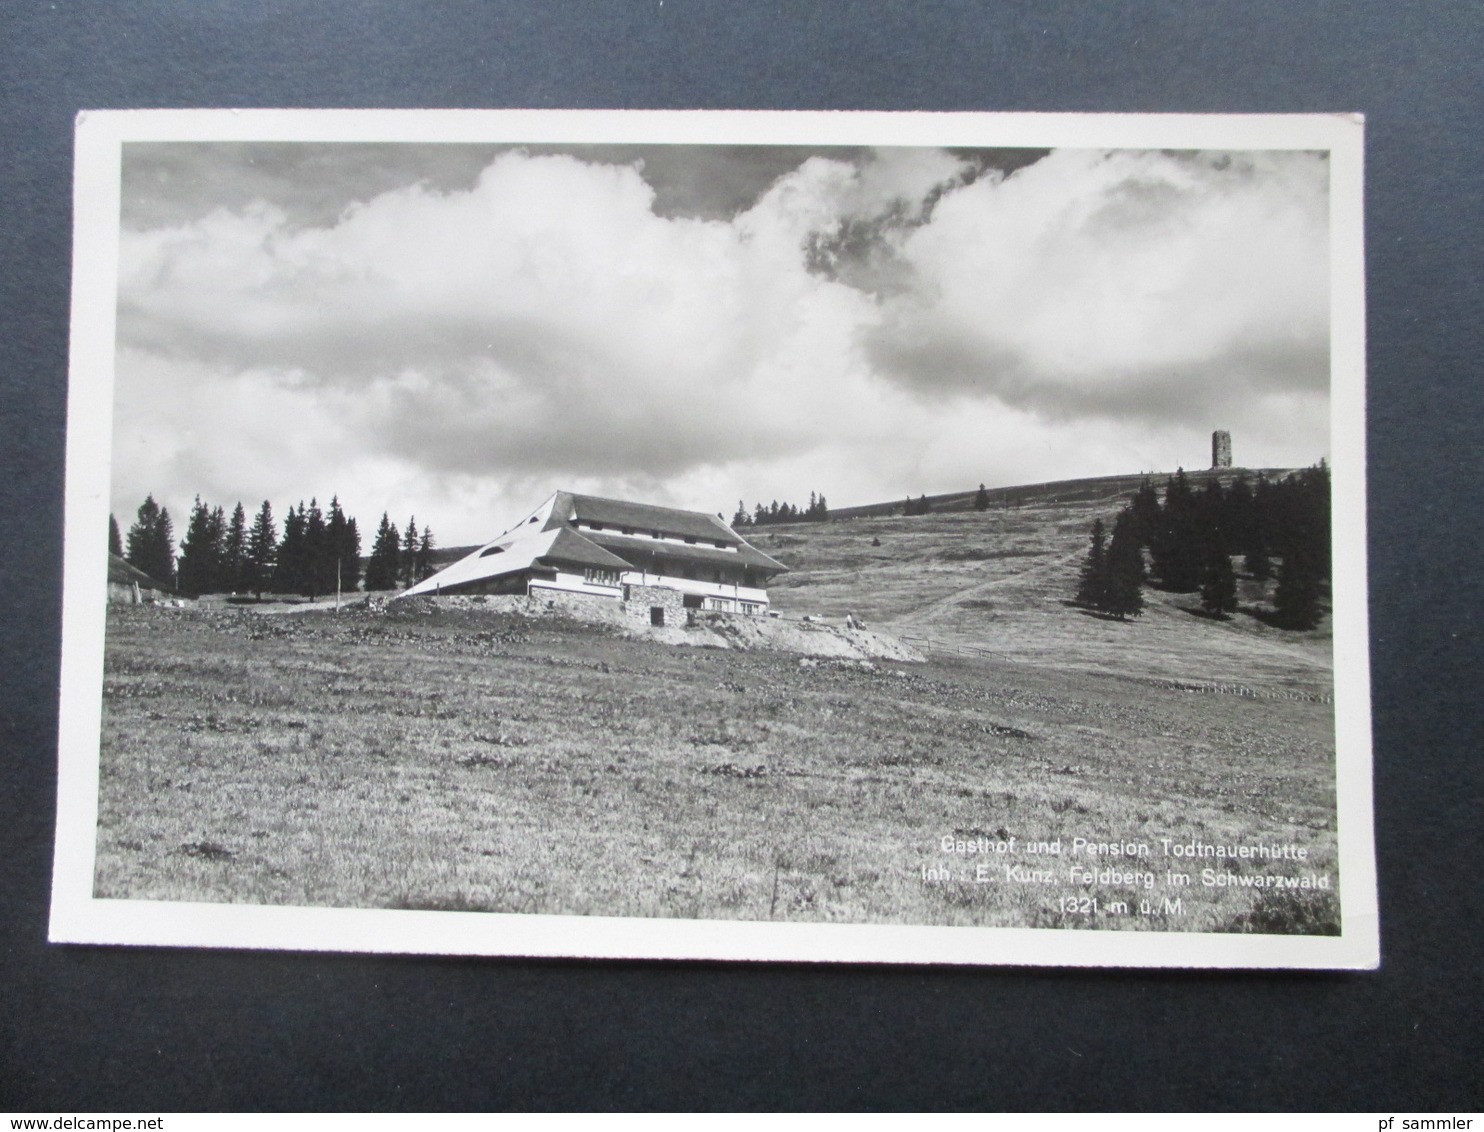 AK Echtfoto 1938 Gasthof Und Pension Todtnauerhütte Inh. E. Kunz, Feldberg Im Schwarzwald - Hotels & Gaststätten